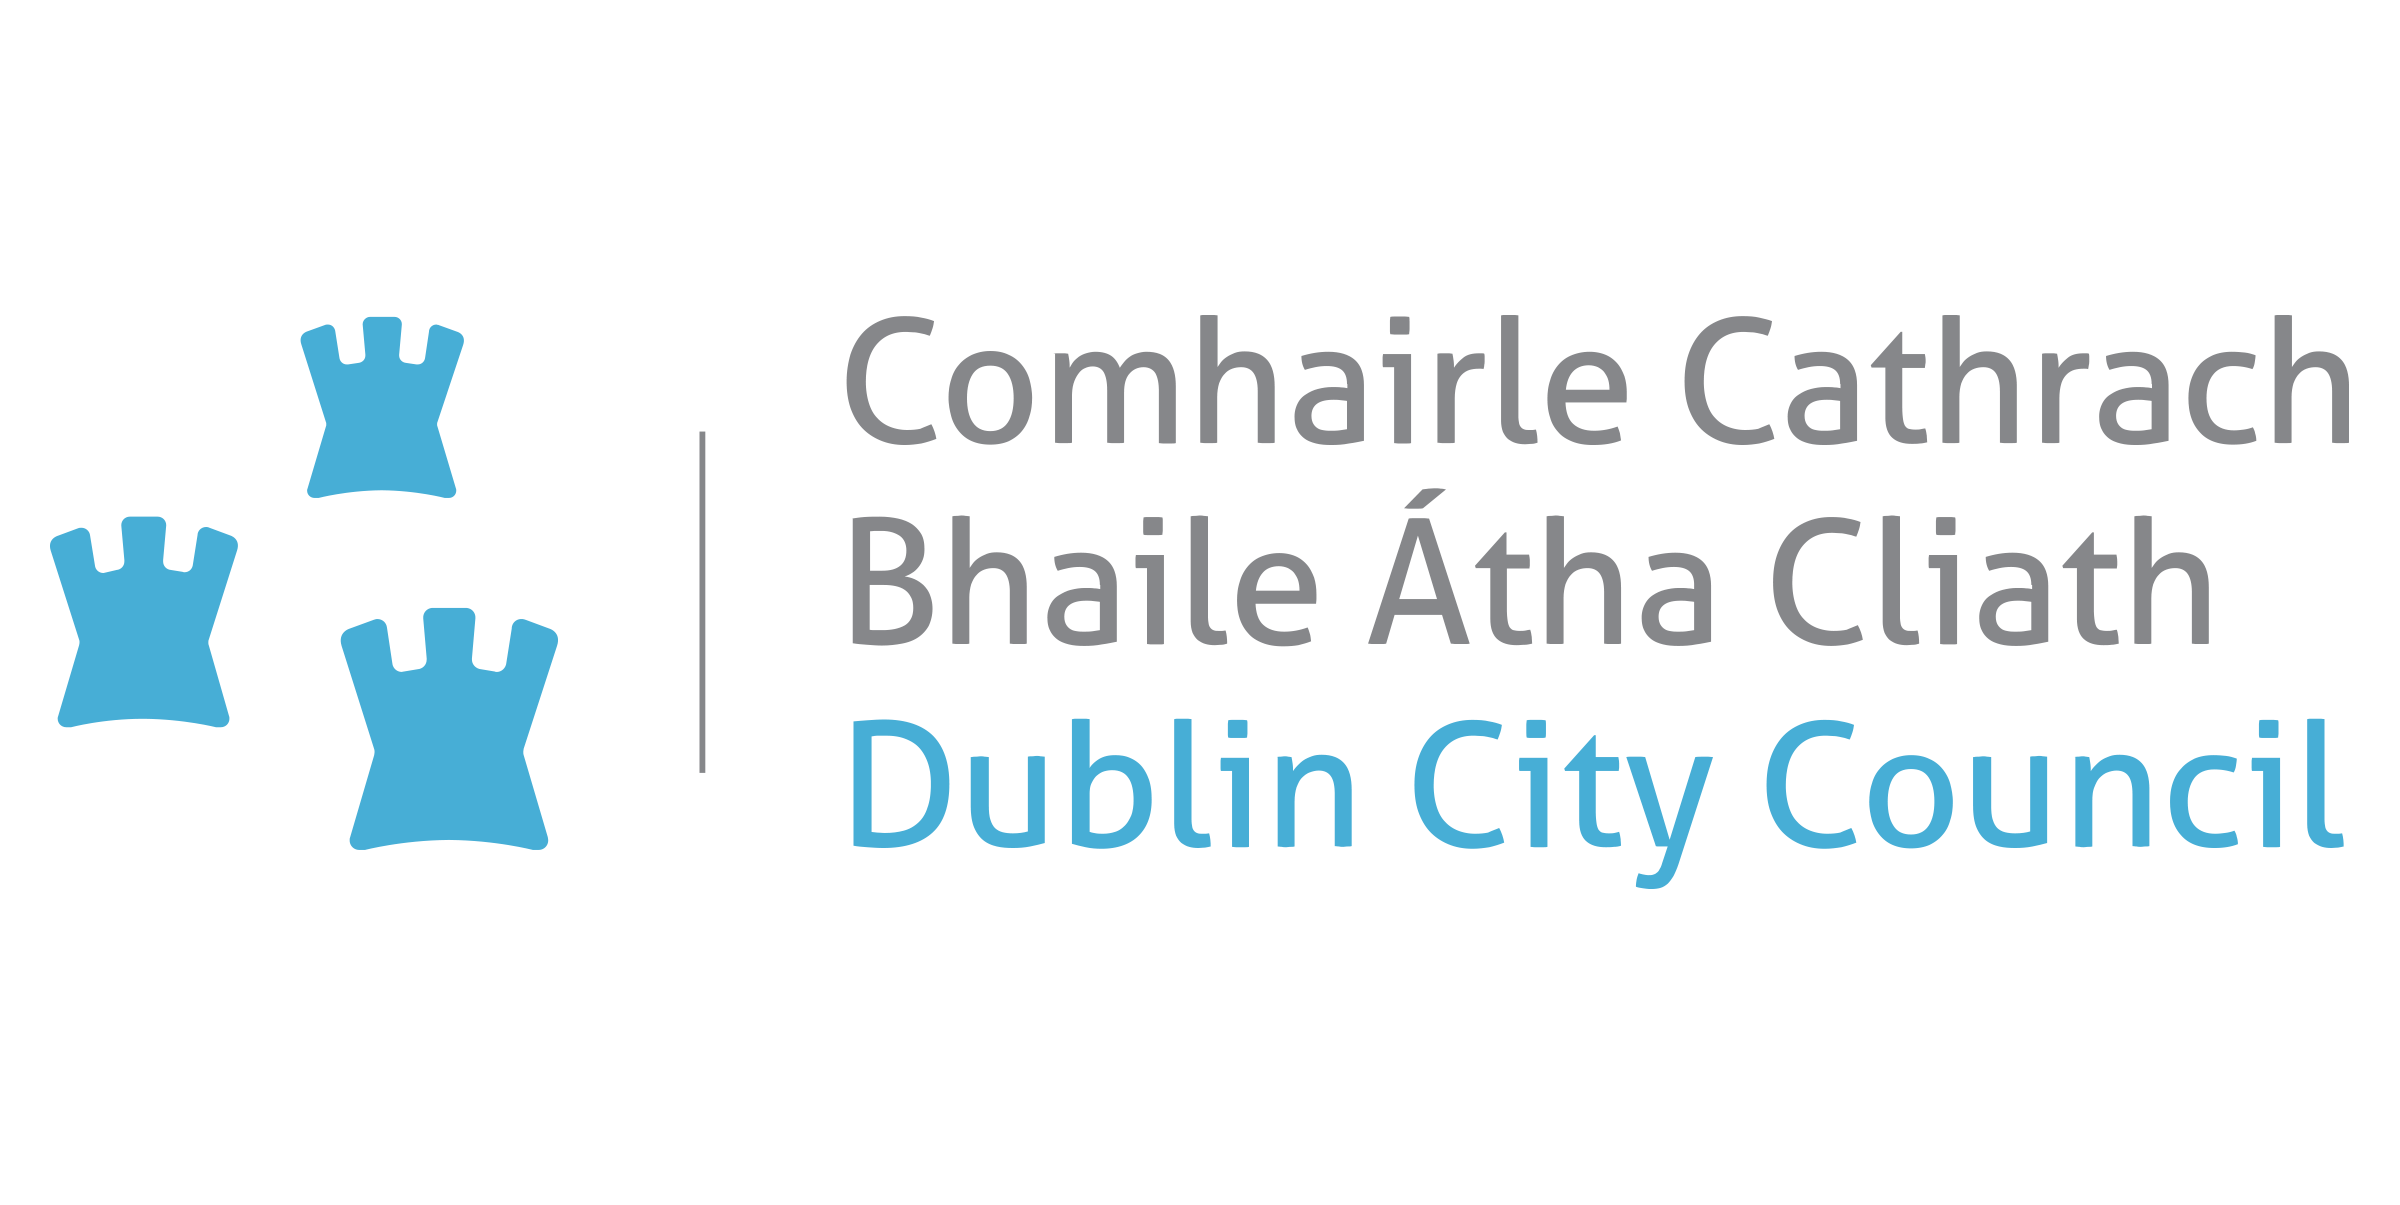 Dublin city council logo